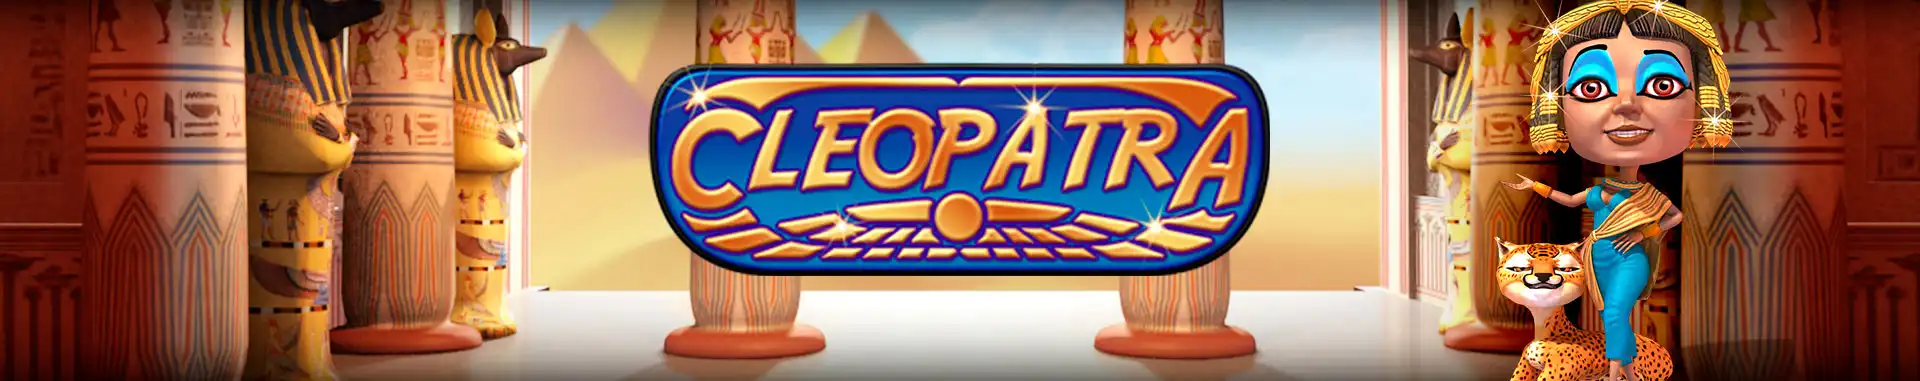 Video Bingo Online Cleopatra